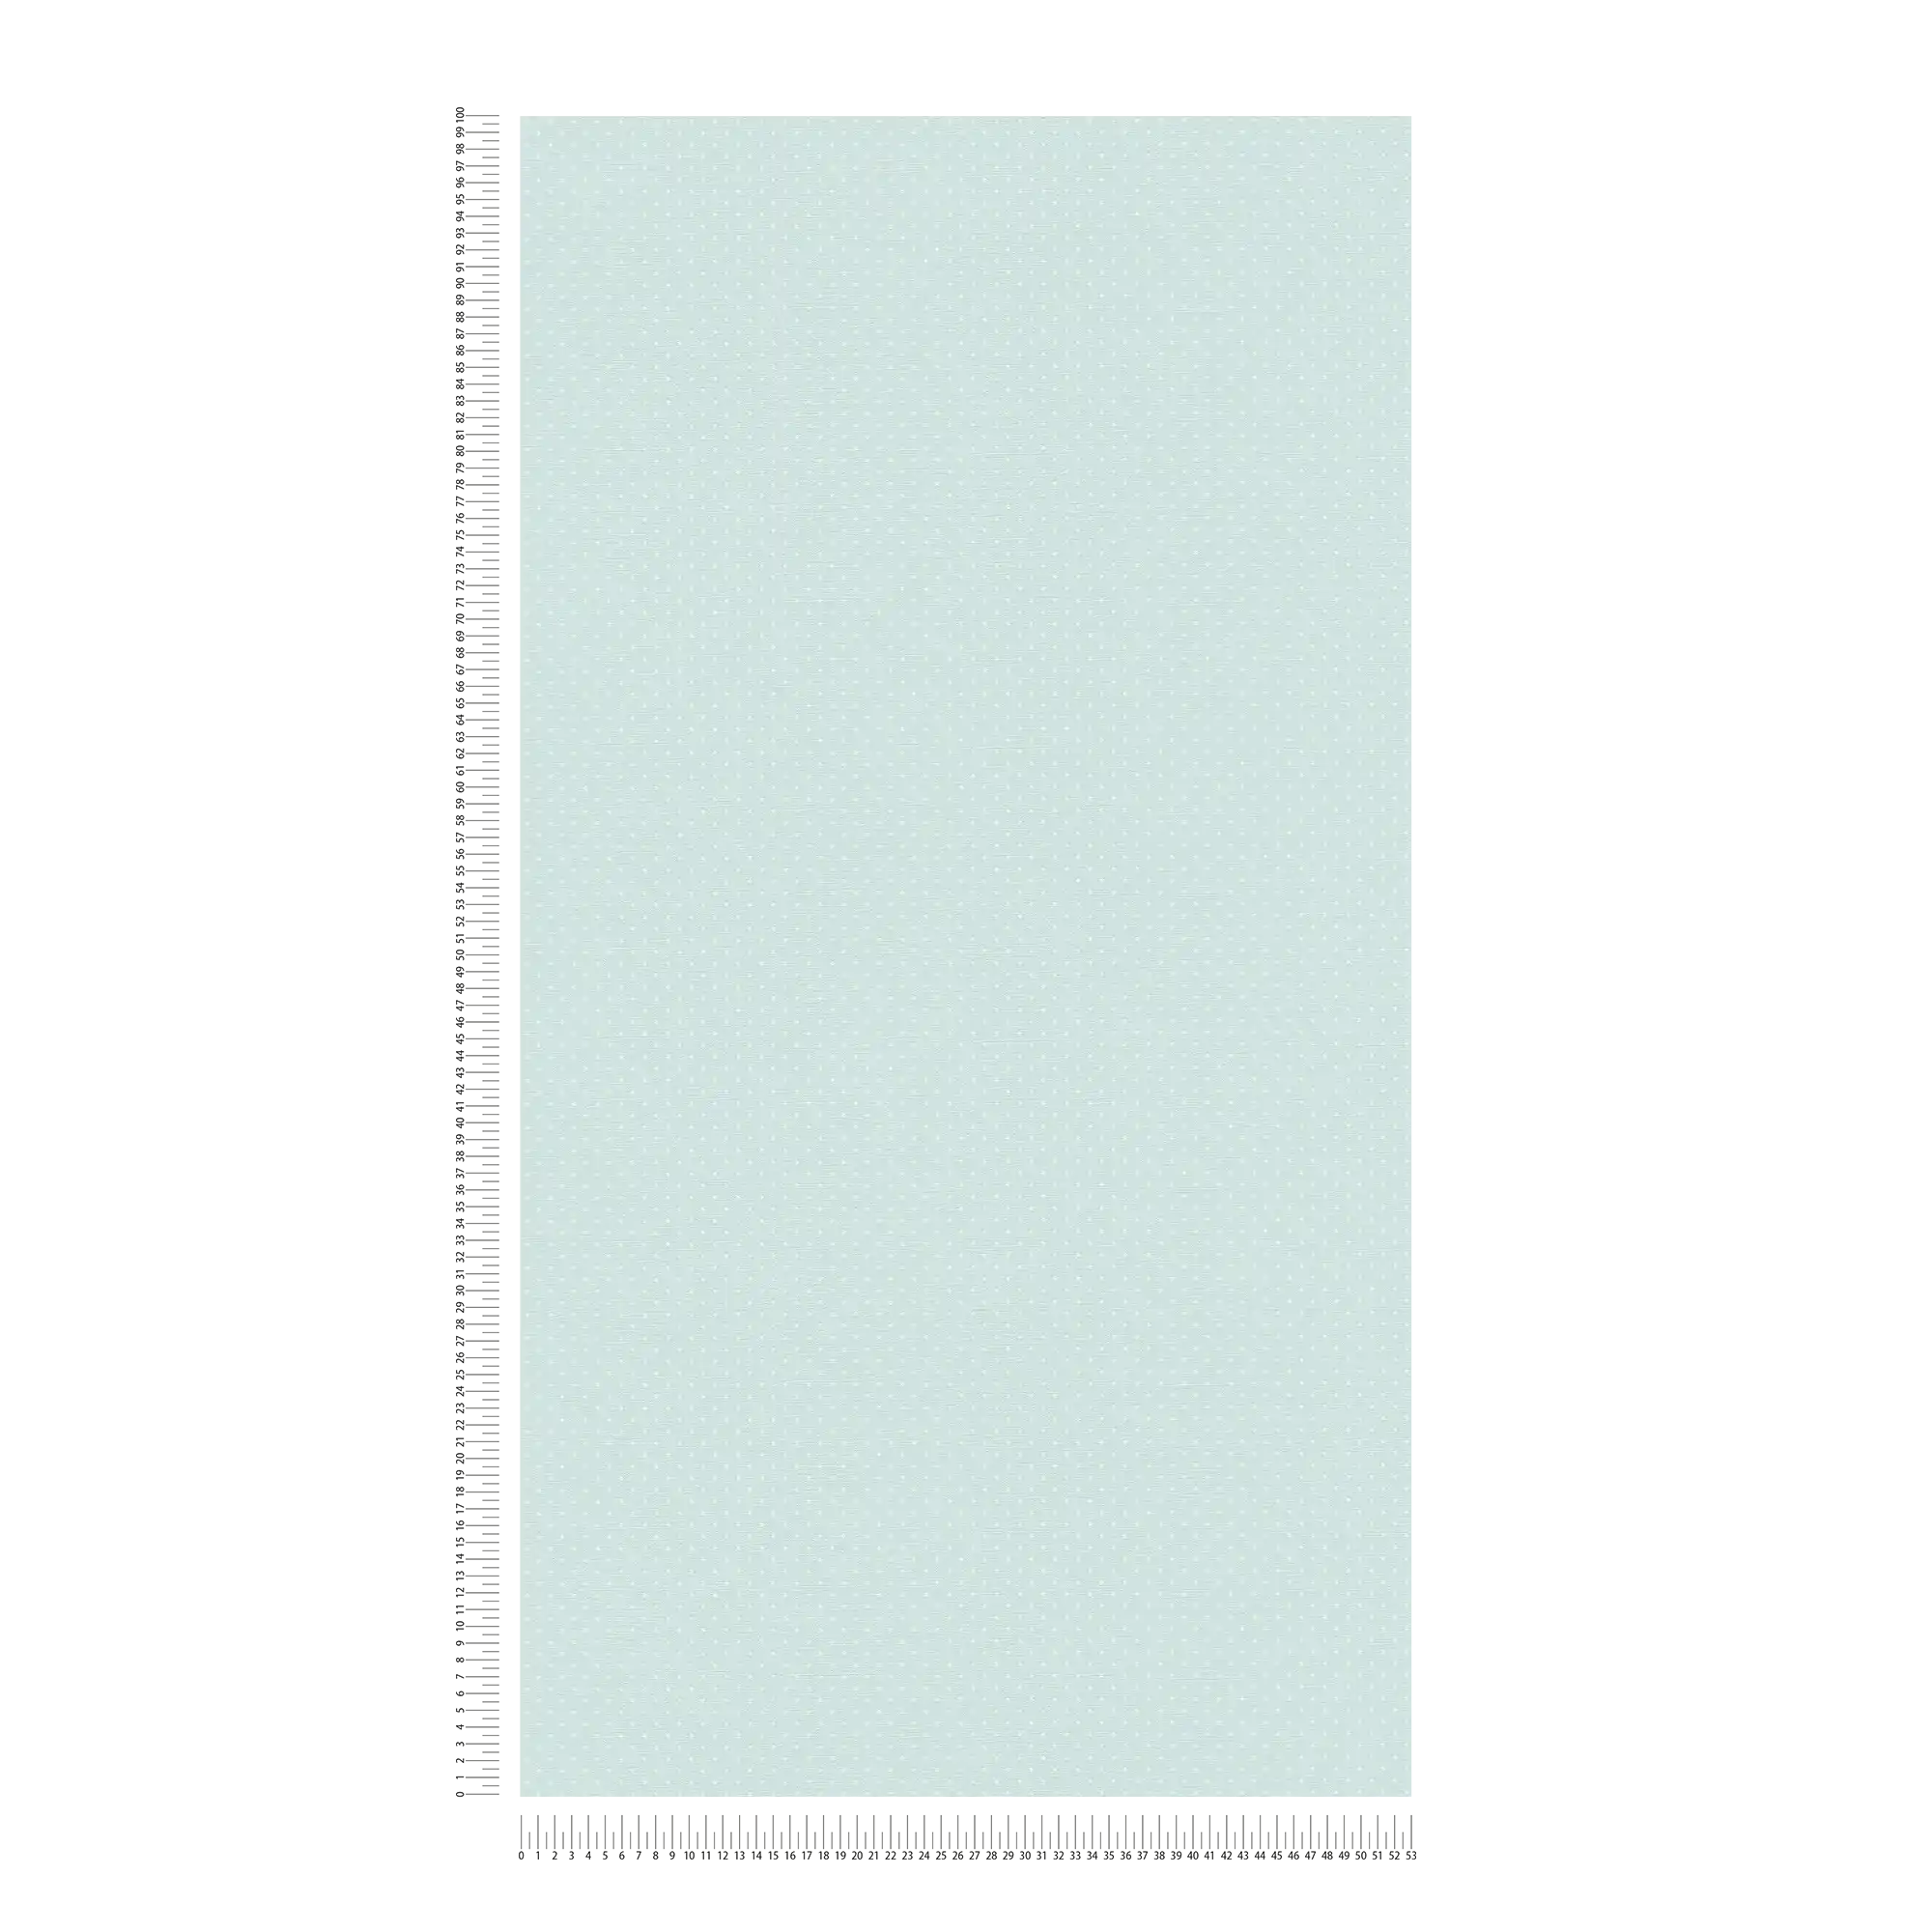             Vliestapete mit kleinem Punktmuster – Hellblau, Weiß
        